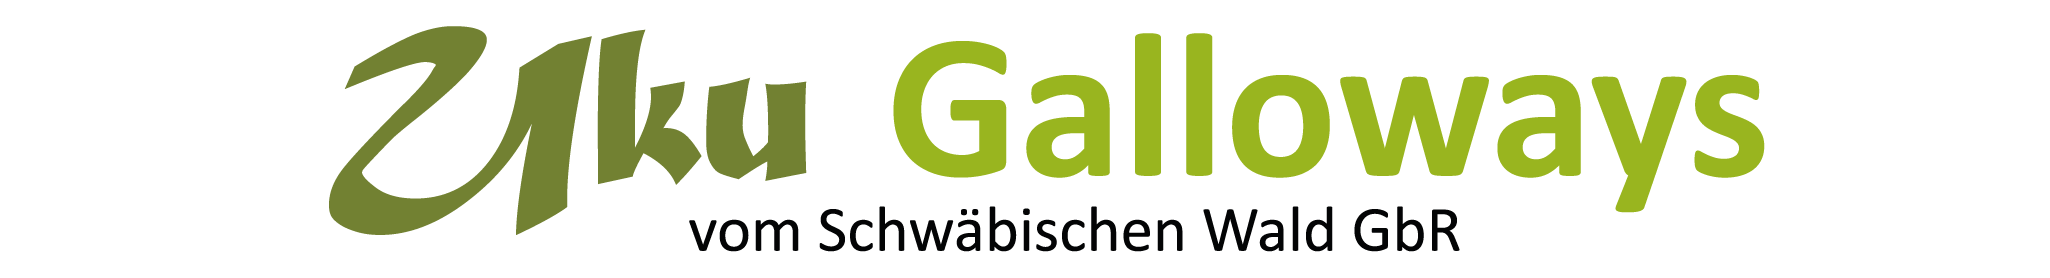 Uku Galloways vom Schwäbischen Wald GbR